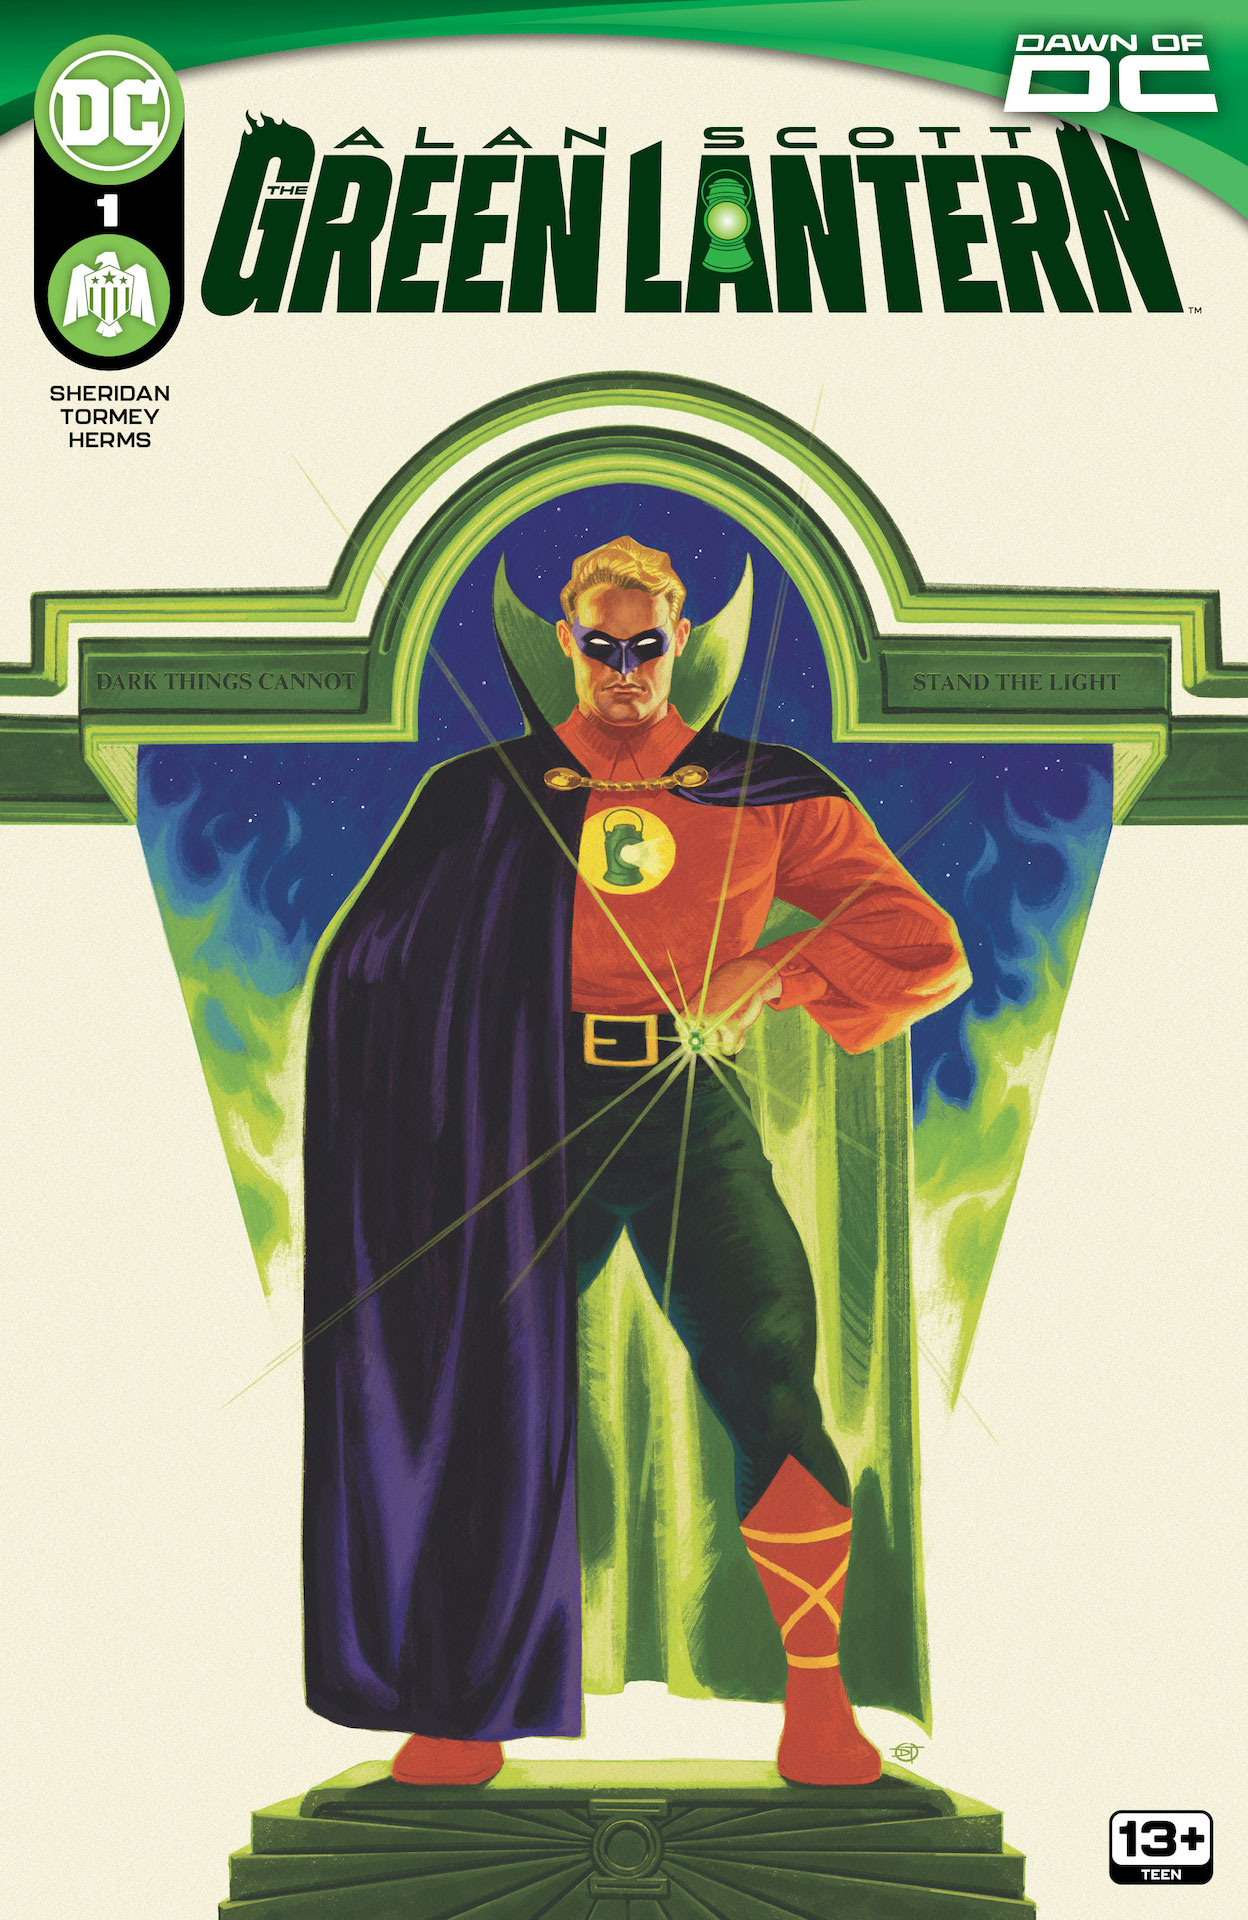 DC Preview: Alan Scott: The Green Lantern #1